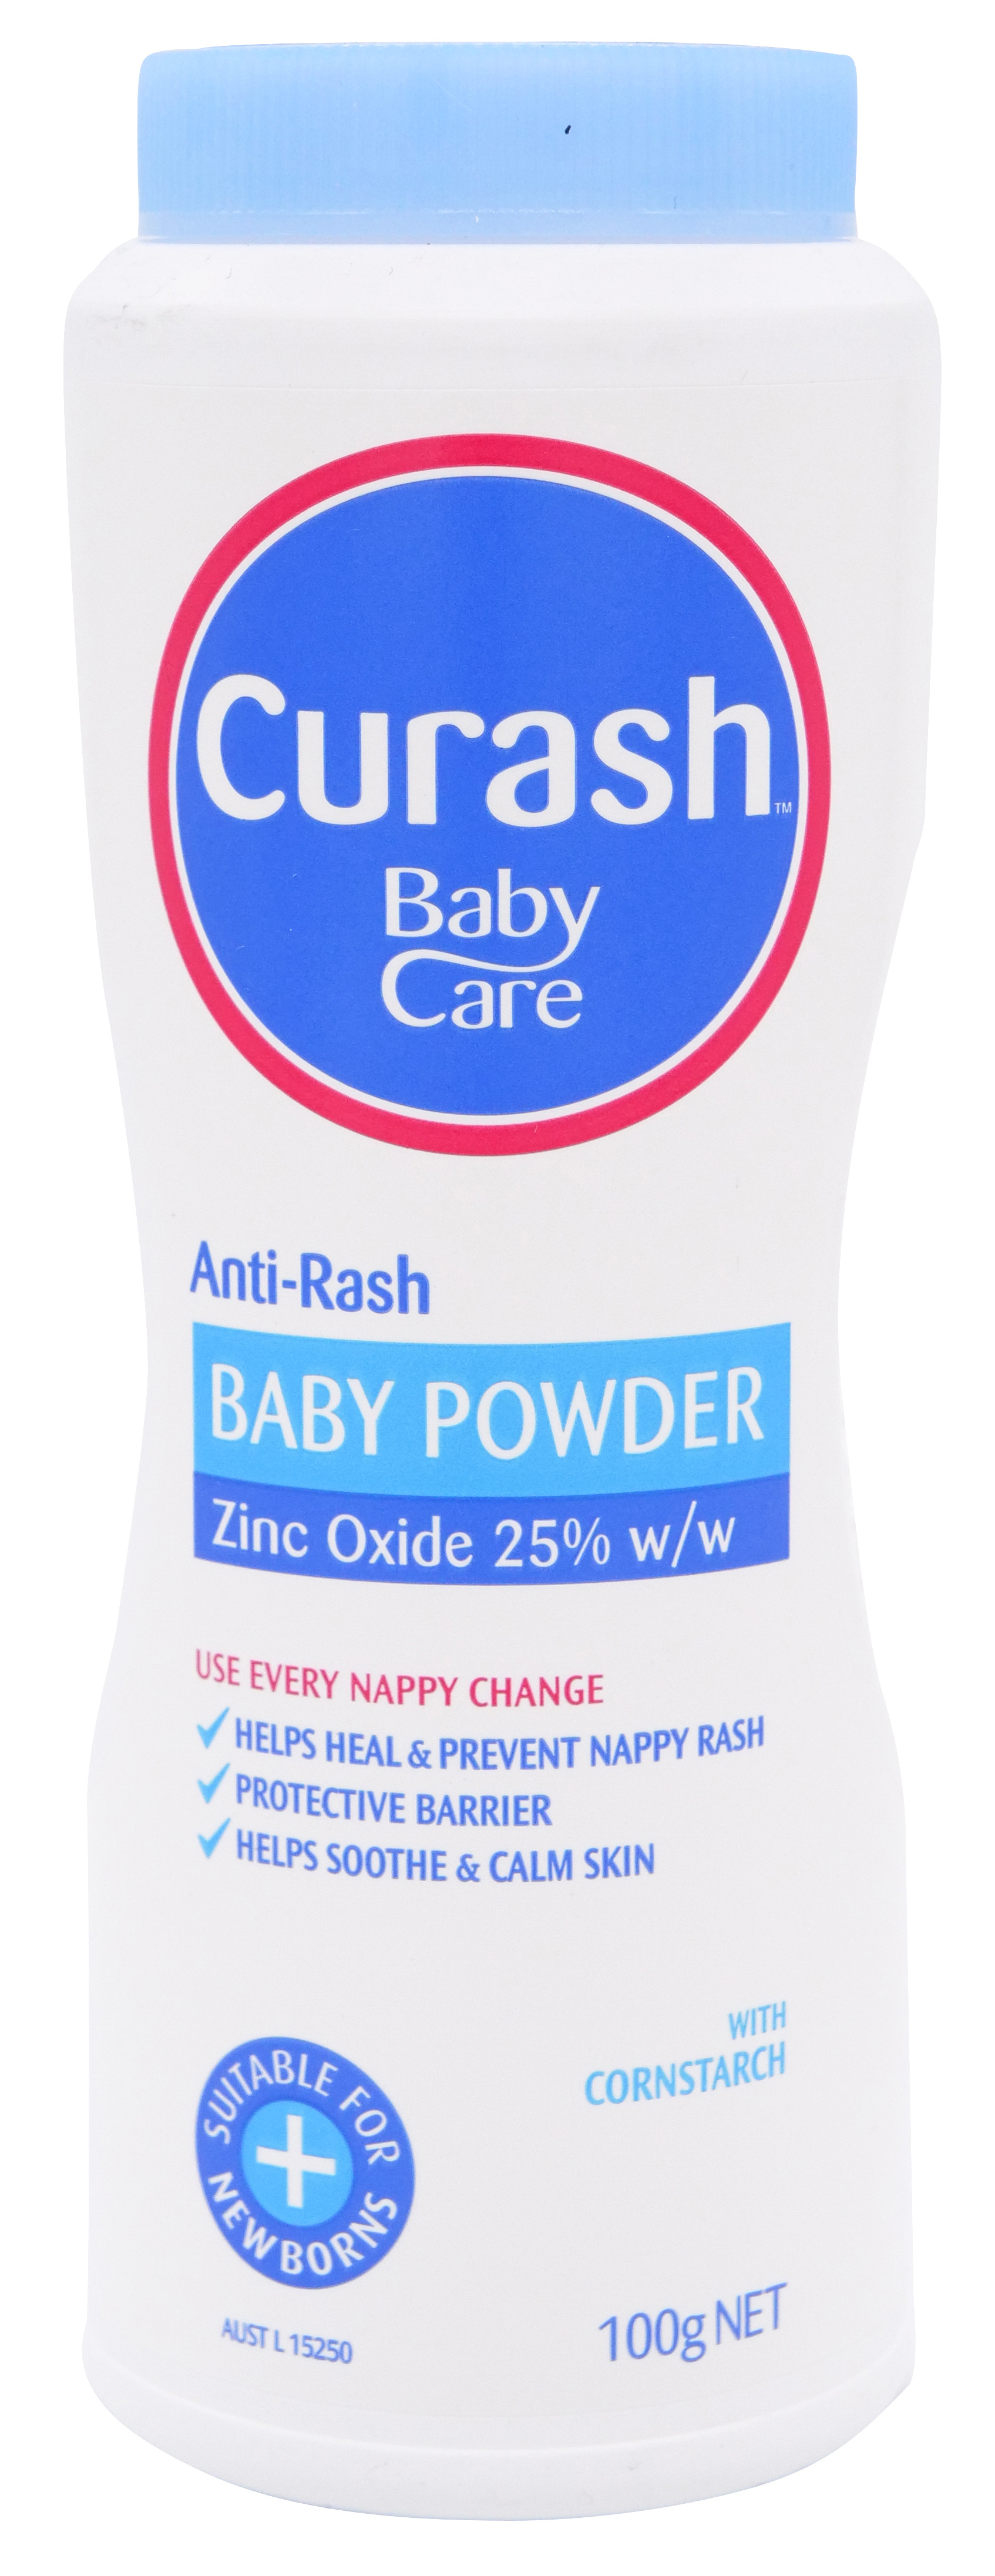 Curash Powder Anti-Rash Baby 100g image 0